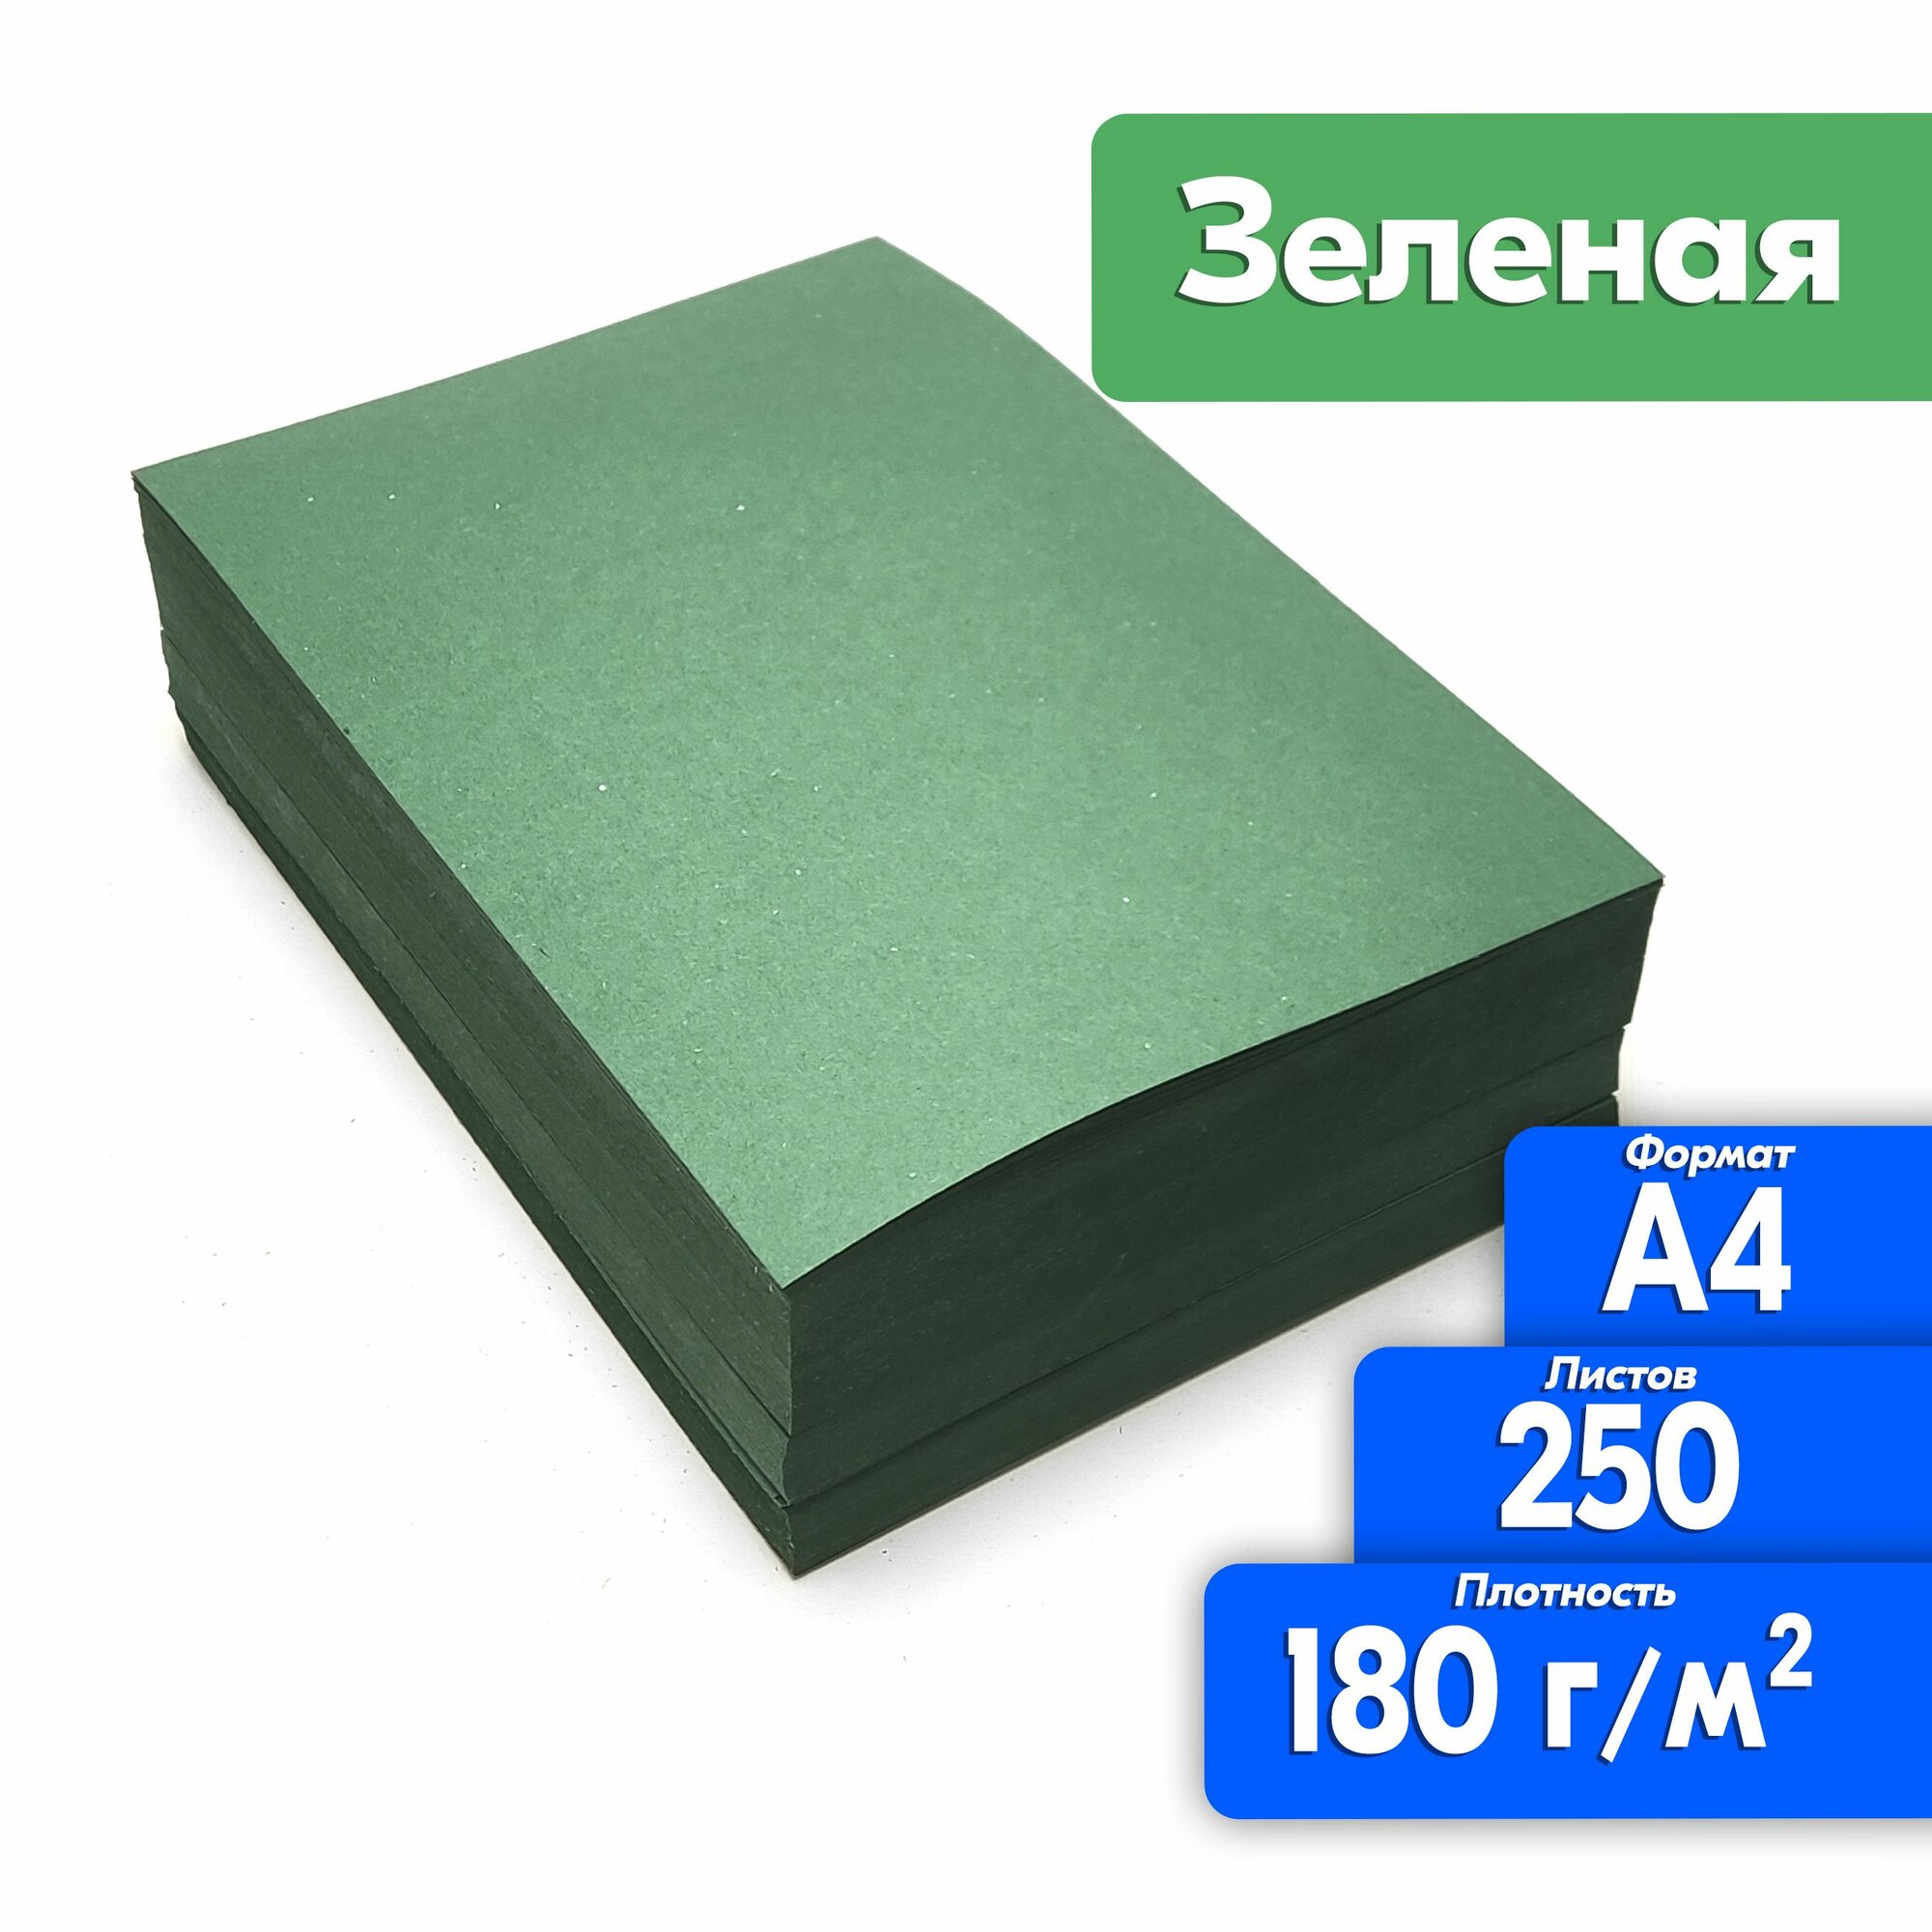 Цветная бумага двухсторонняя А4 250 листов для принтера, зеленая, высокая плотность 180 г/м2